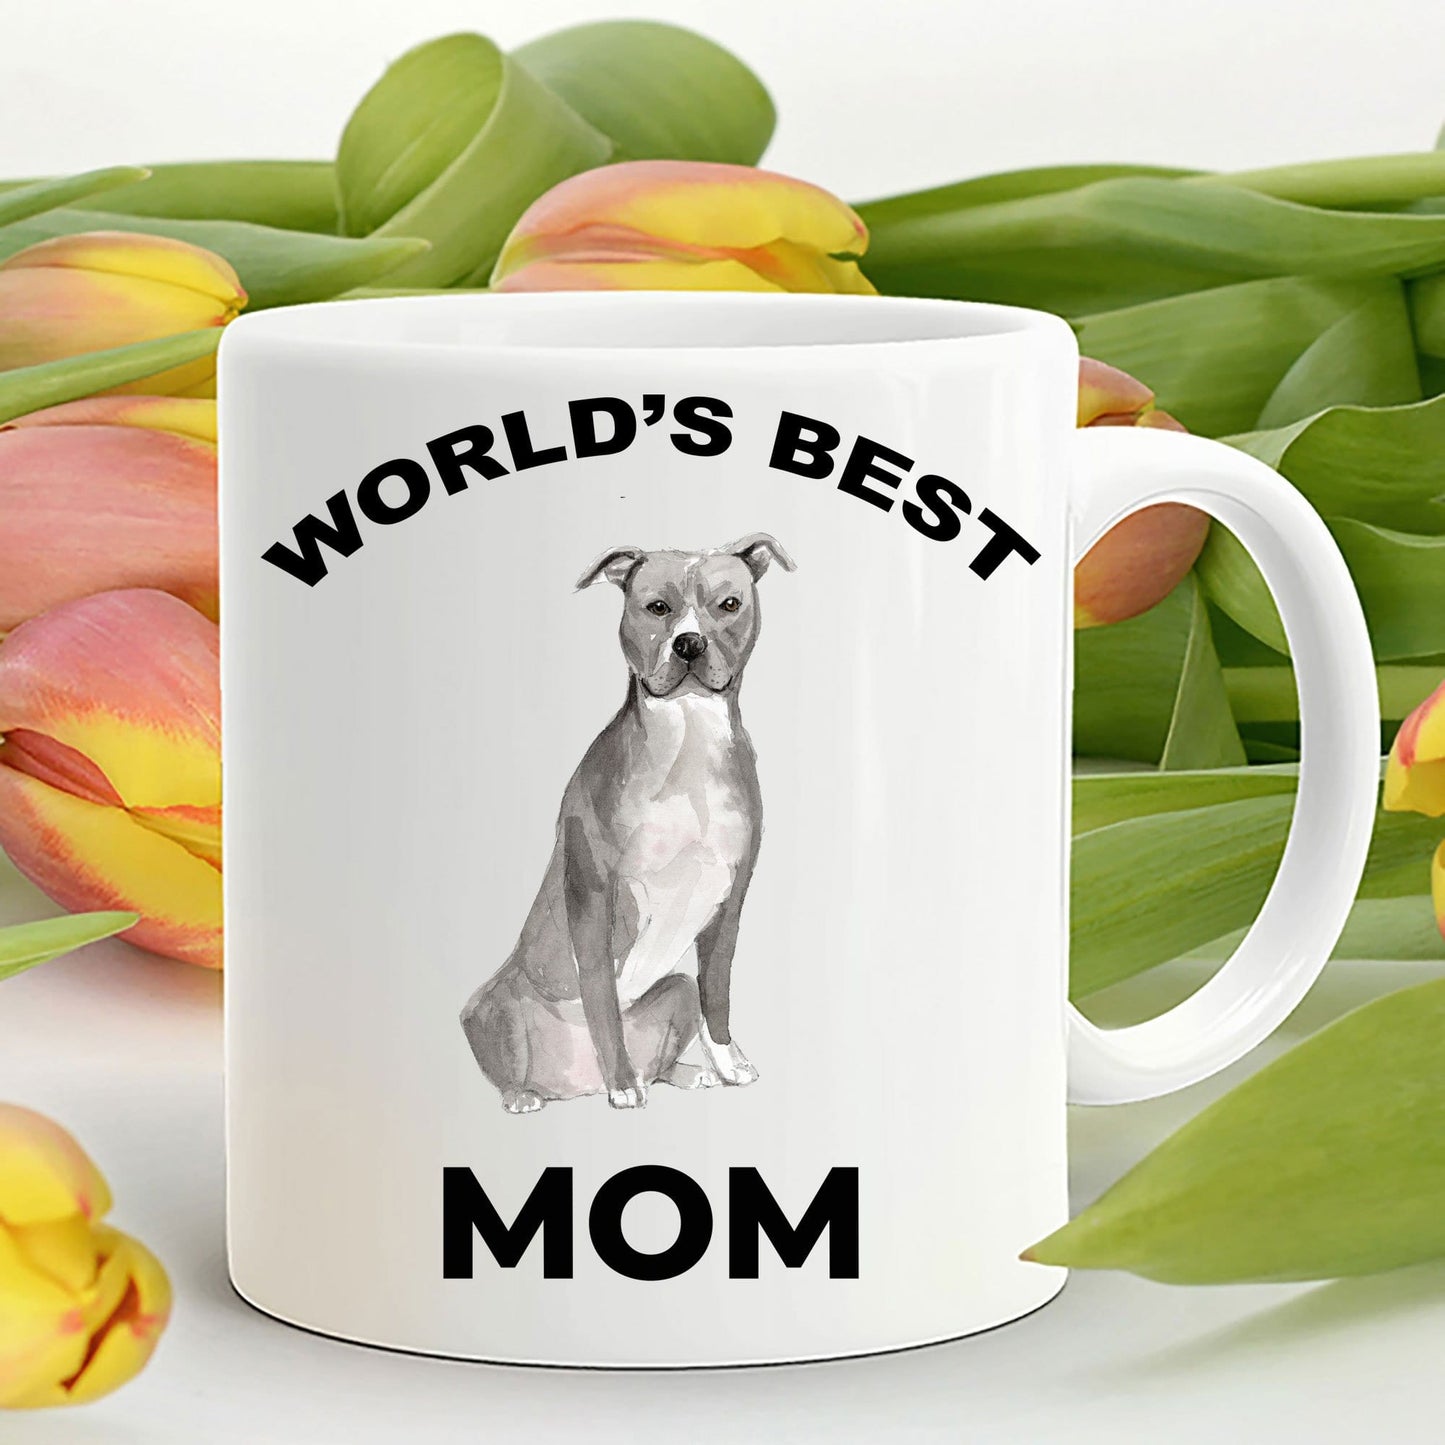 American Staffordshire Terrier Best Dog Mom Coffee Mug